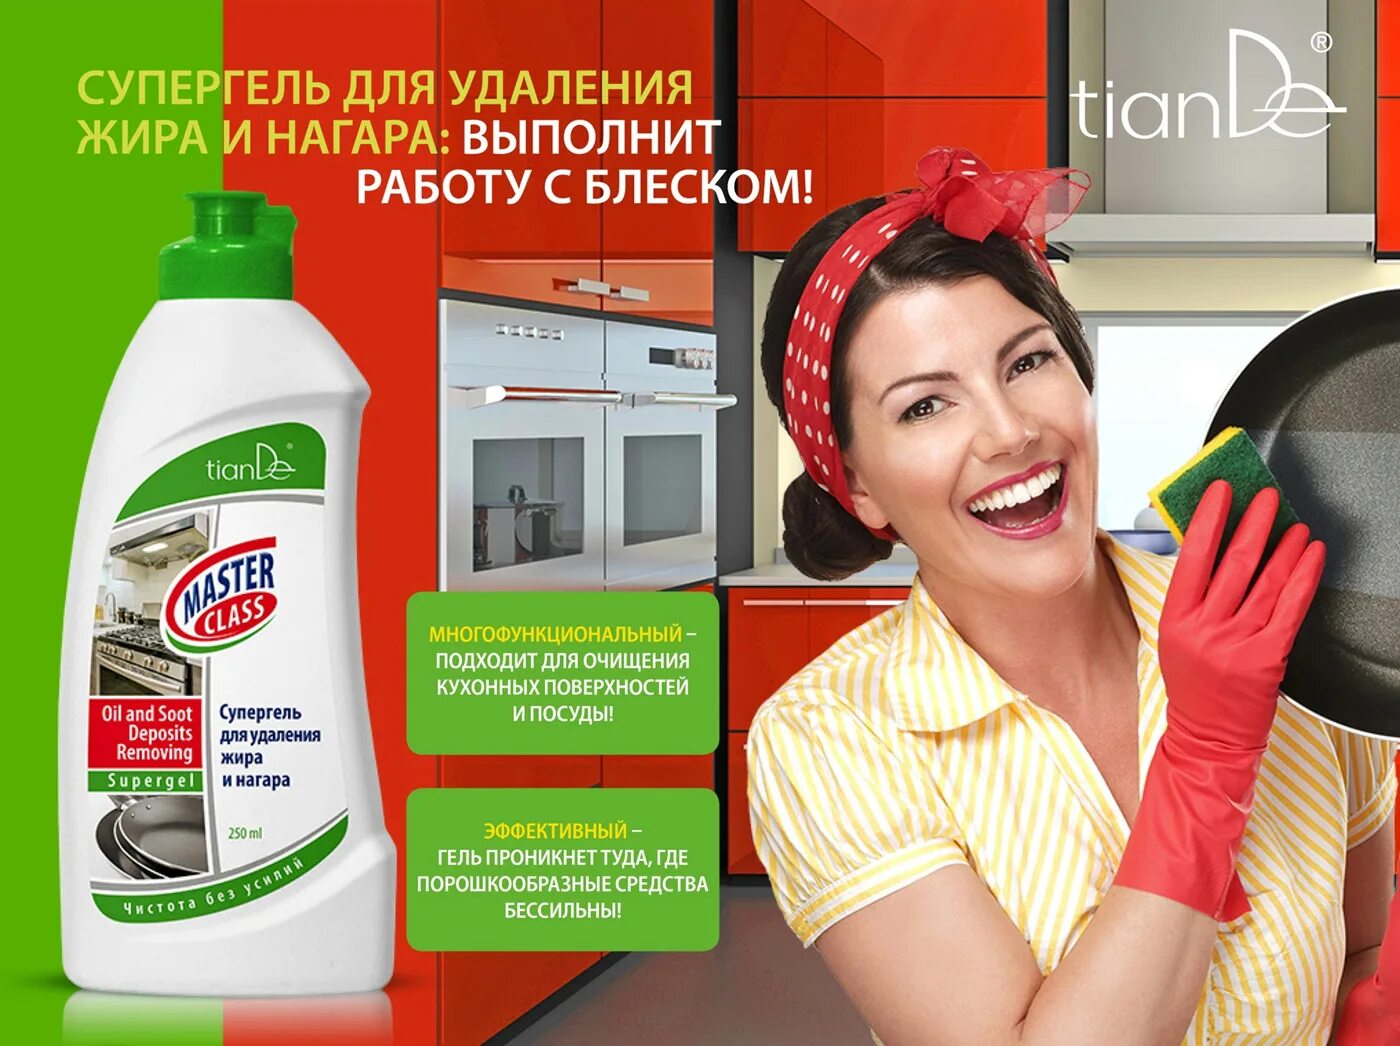 Реклама чистящего средства. Реклама моющих средств. Средство для мытья реклама. Удалитель жира и нагара. Эффективное средство от жира